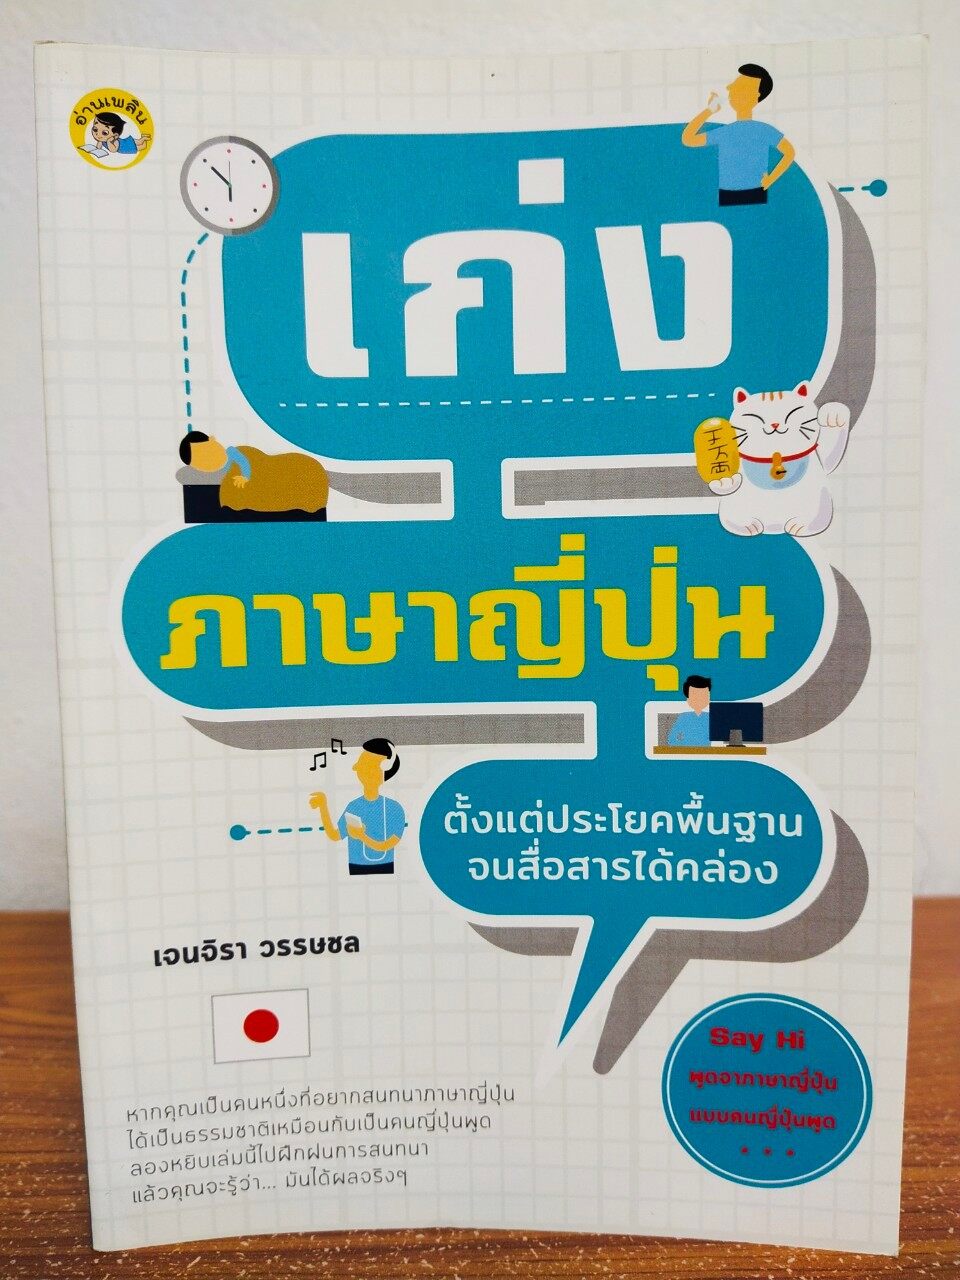 หนังสือคู่มือเสริมการเรียนรู้ภาษาญี่ปุ่น เก่งภาษาญี่ปุ่น  ตั้งแต่ประโยคพื้นฐาน จนสื่อสารได้คล่อง - Tonklapravit - Thaipick